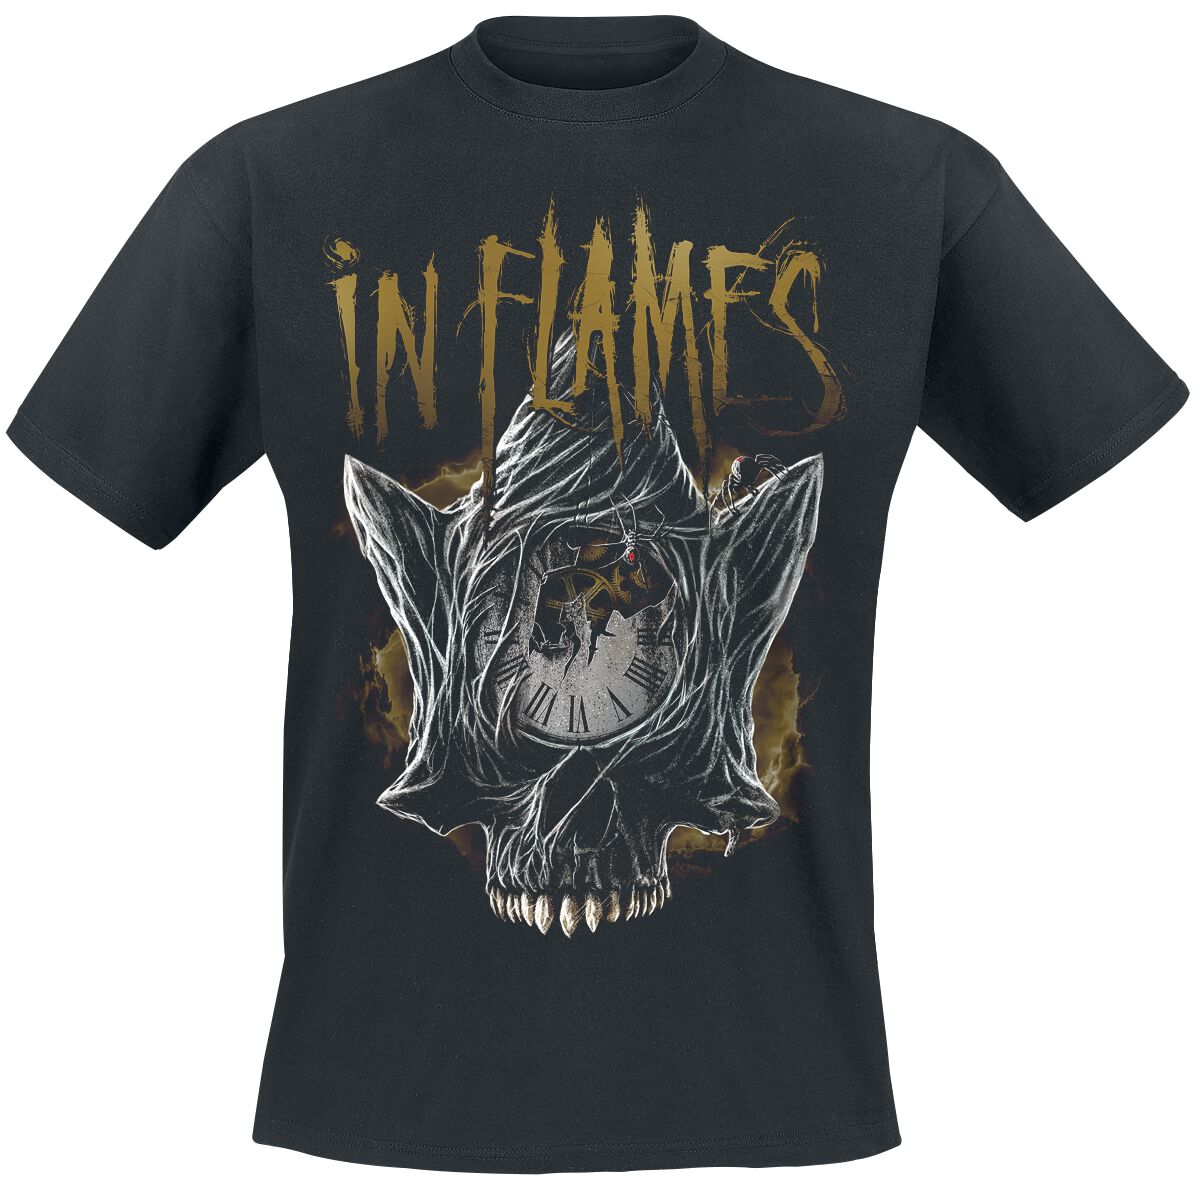 In Flames T-Shirt - Foregone Skull - S bis 3XL - für Männer - Größe XL - schwarz  - Lizenziertes Merchandise!